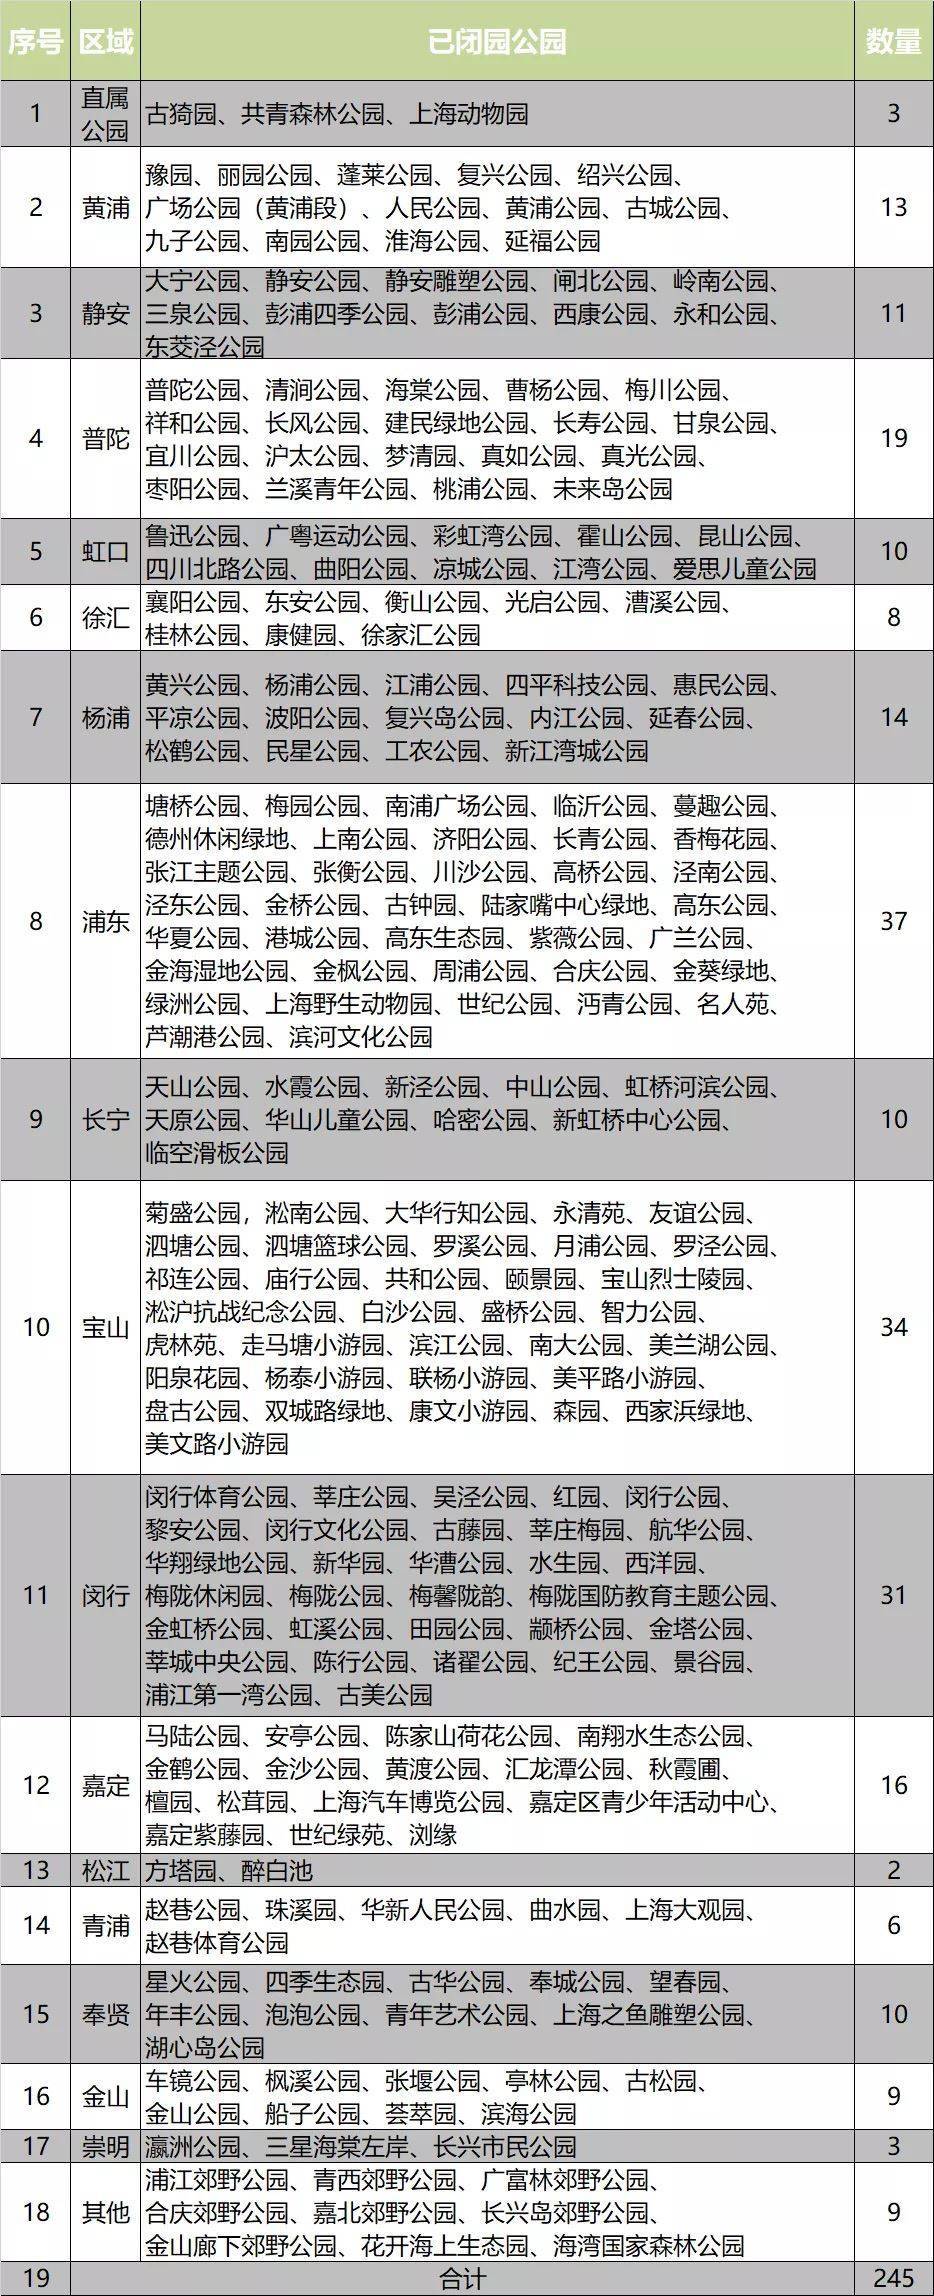 上海|上海245座公园临时闭园 2022上海樱花节延期举办